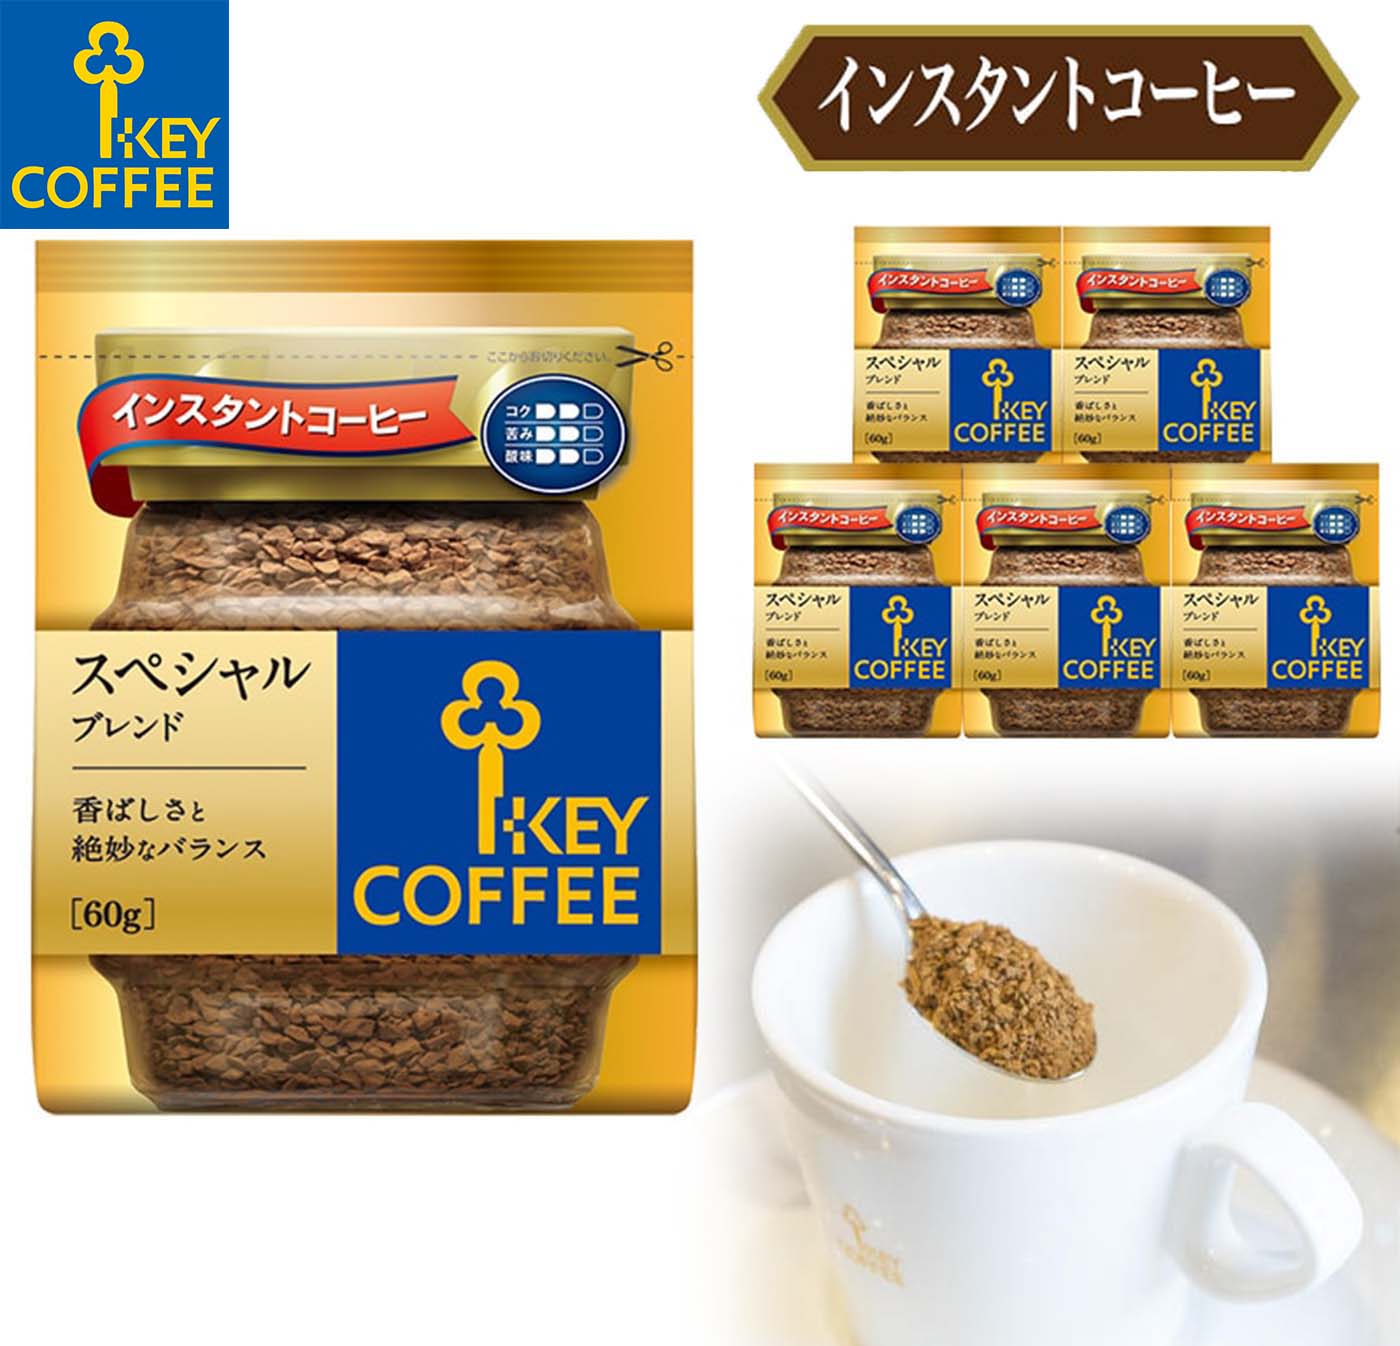 KEY COFFEE キーコーヒー インスタントコーヒー スペシャルブレンド 袋 60g×6 インスタントコーヒーの商品画像